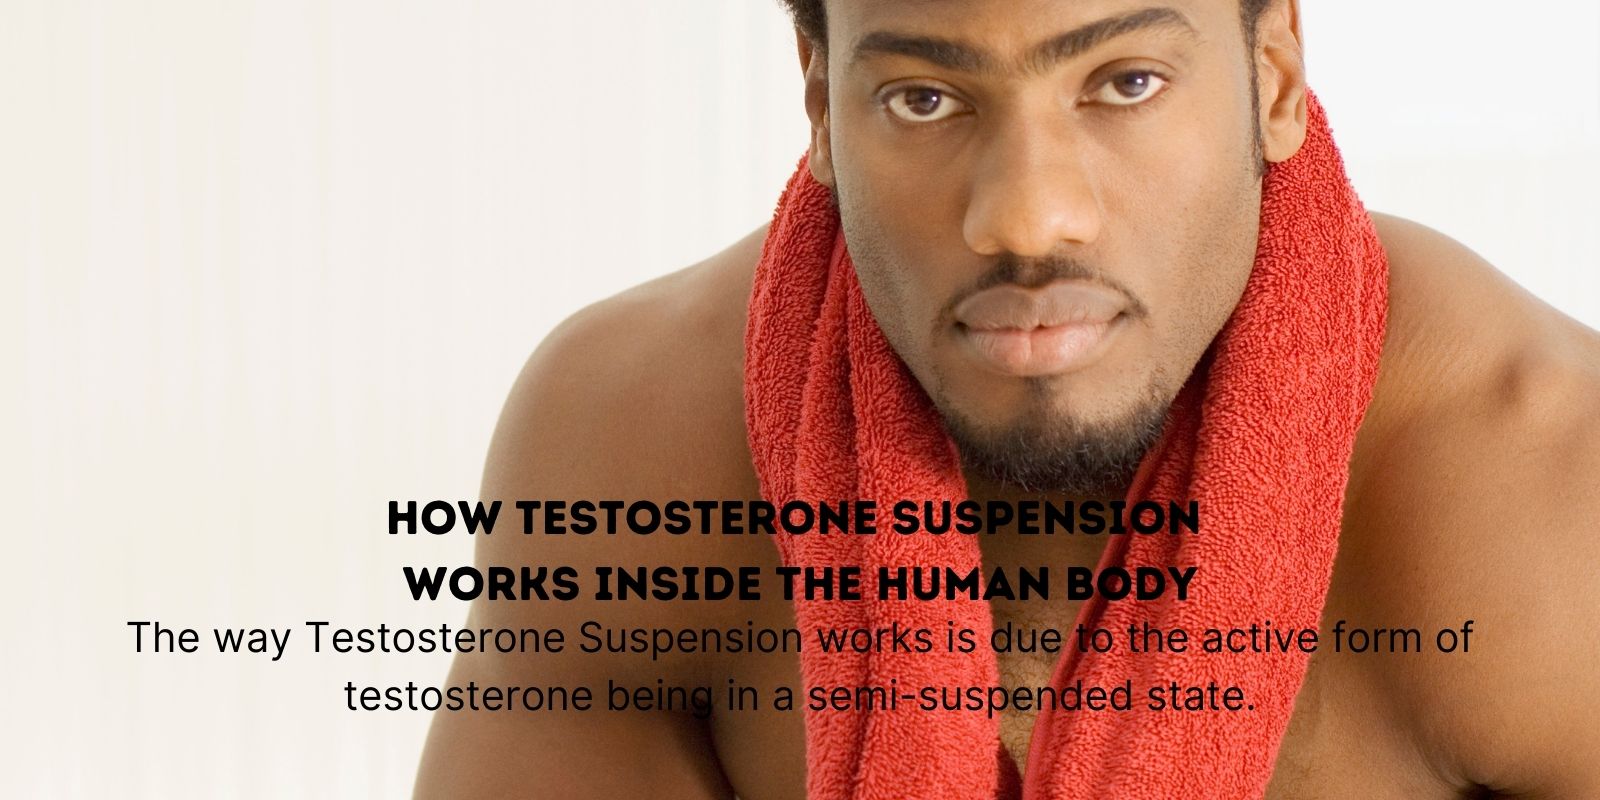 Como a suspensão de testosterona funciona dentro do corpo humano